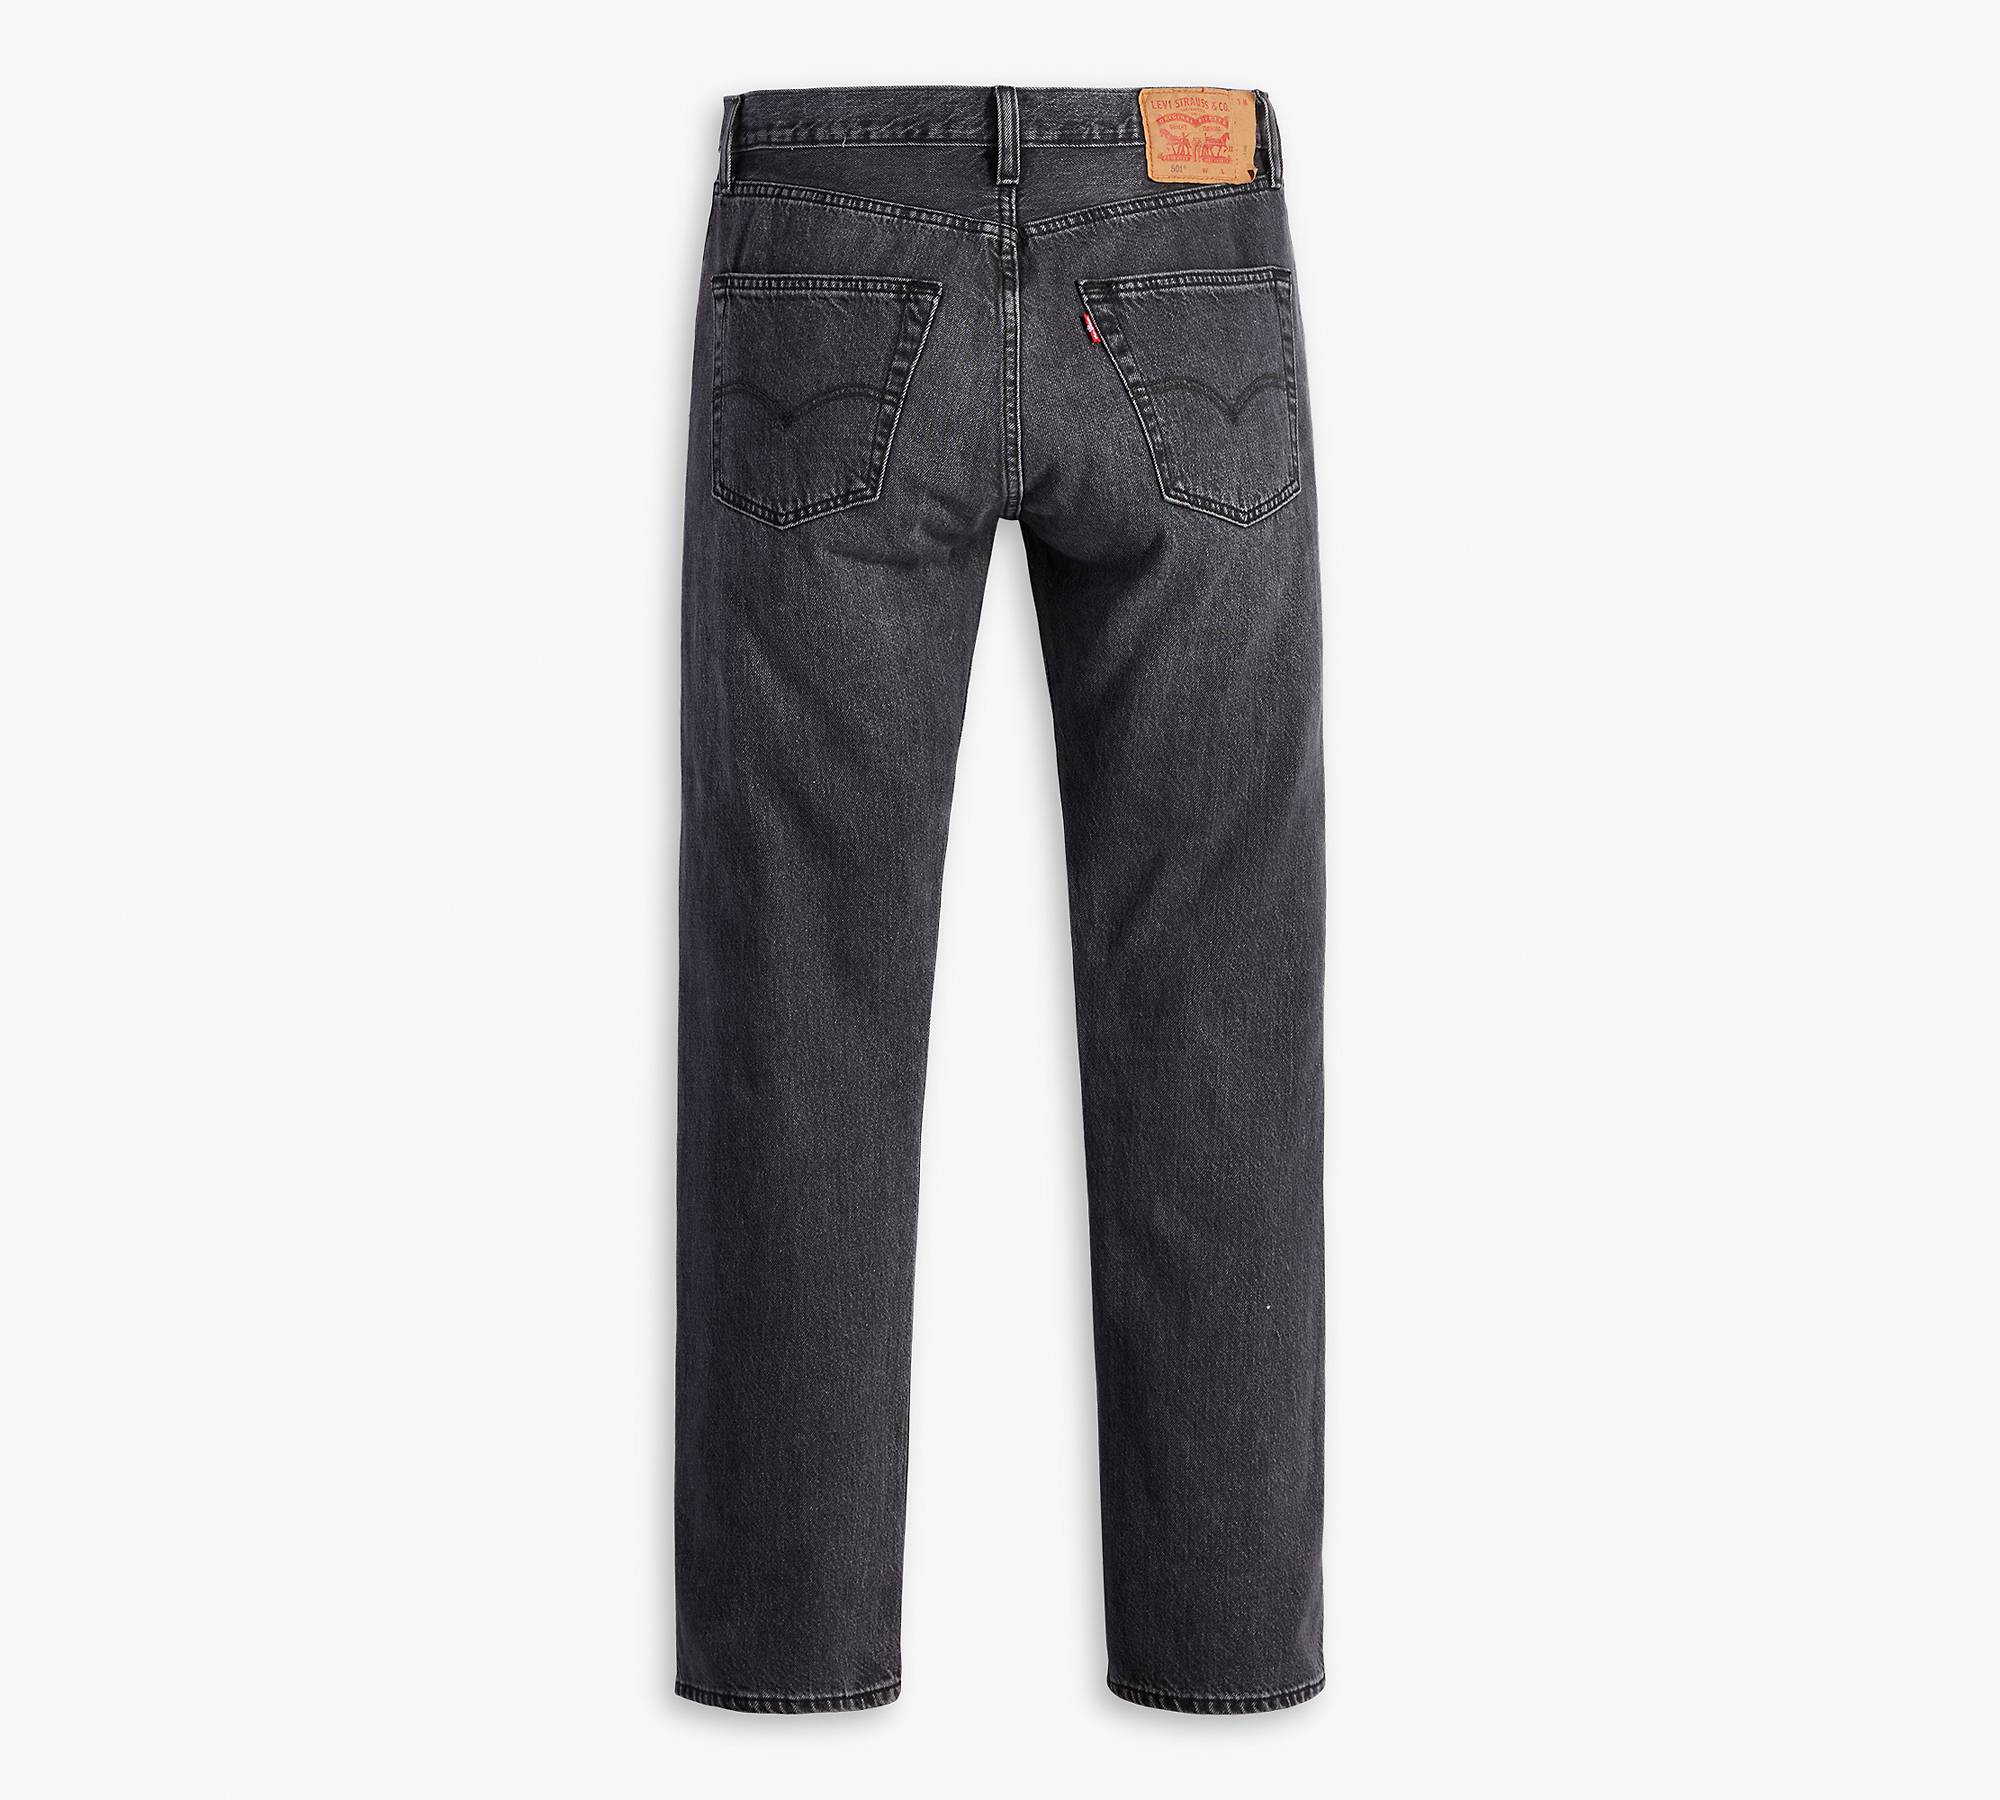 black levis 501 jeans